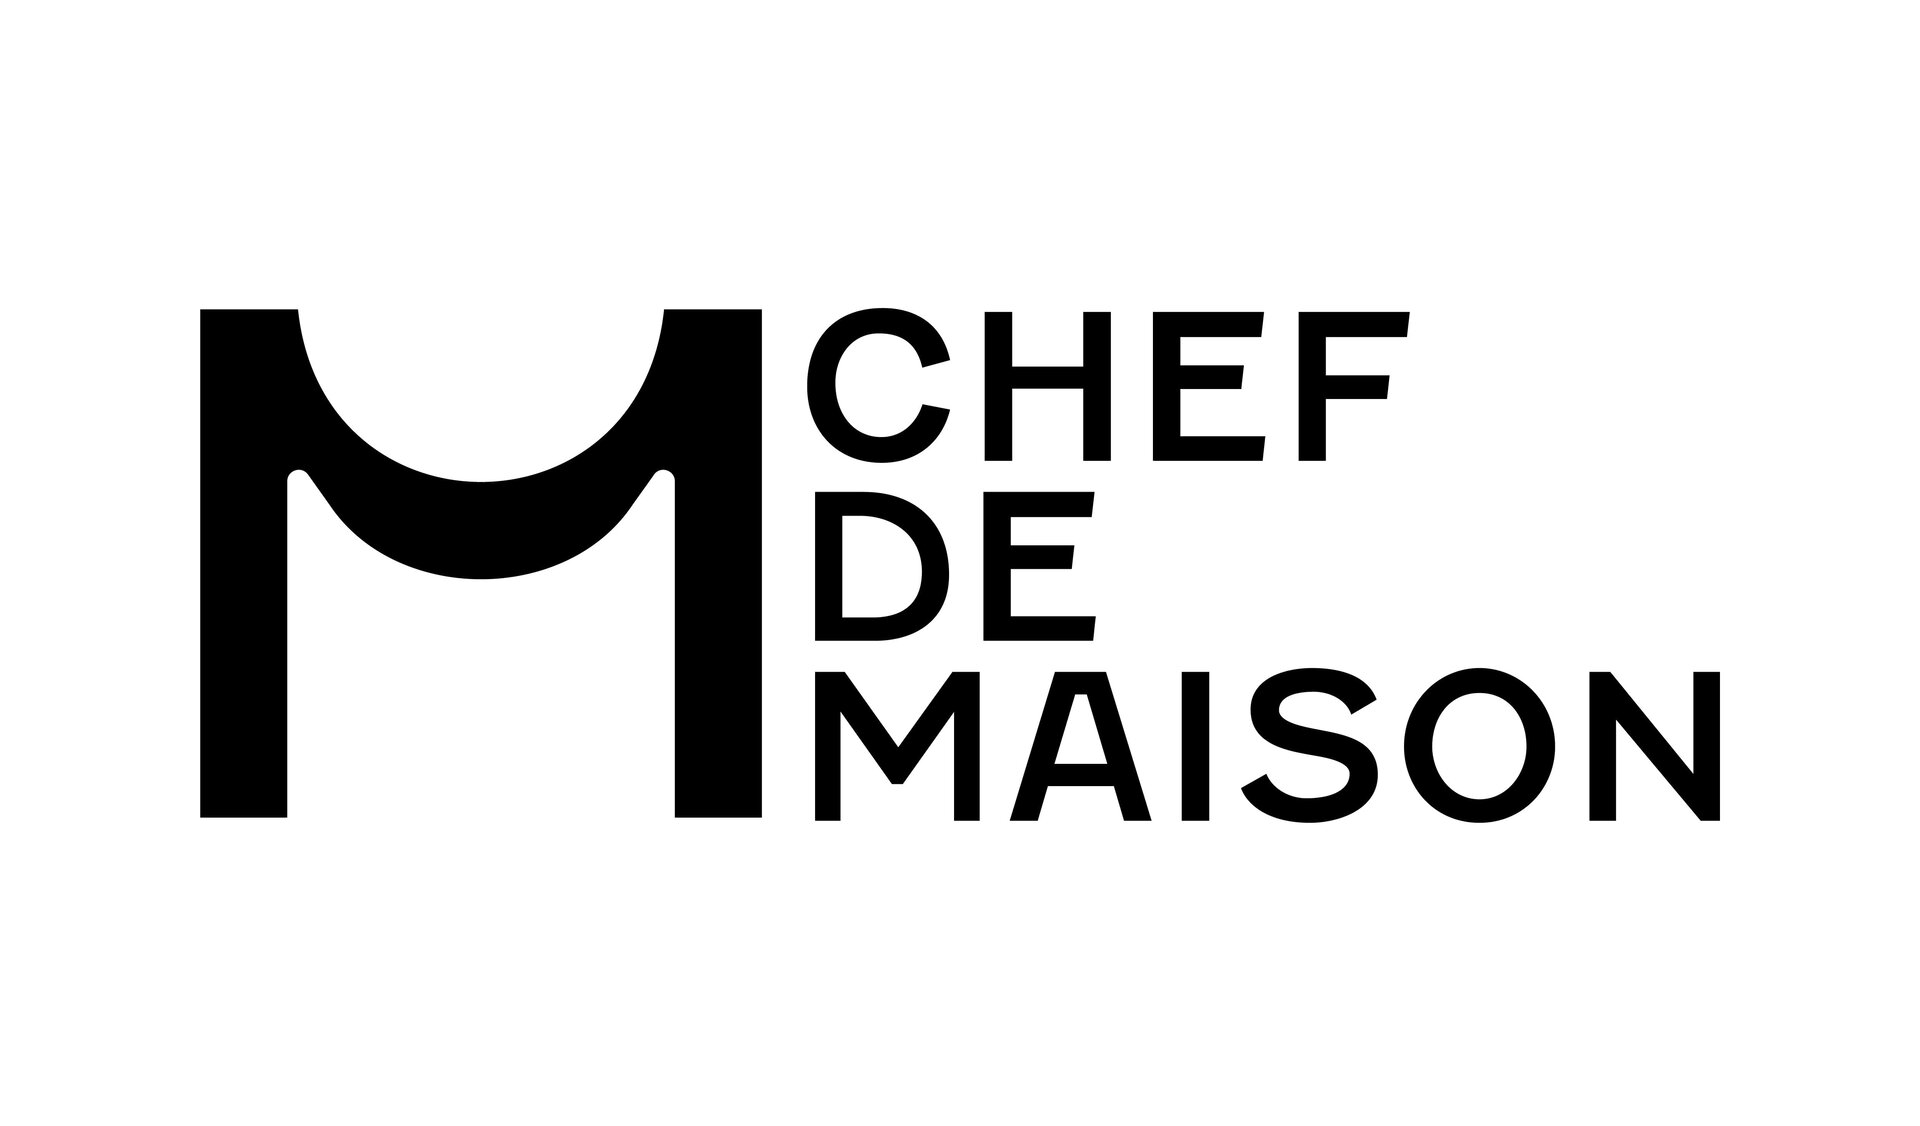 Chef De Maison Logo